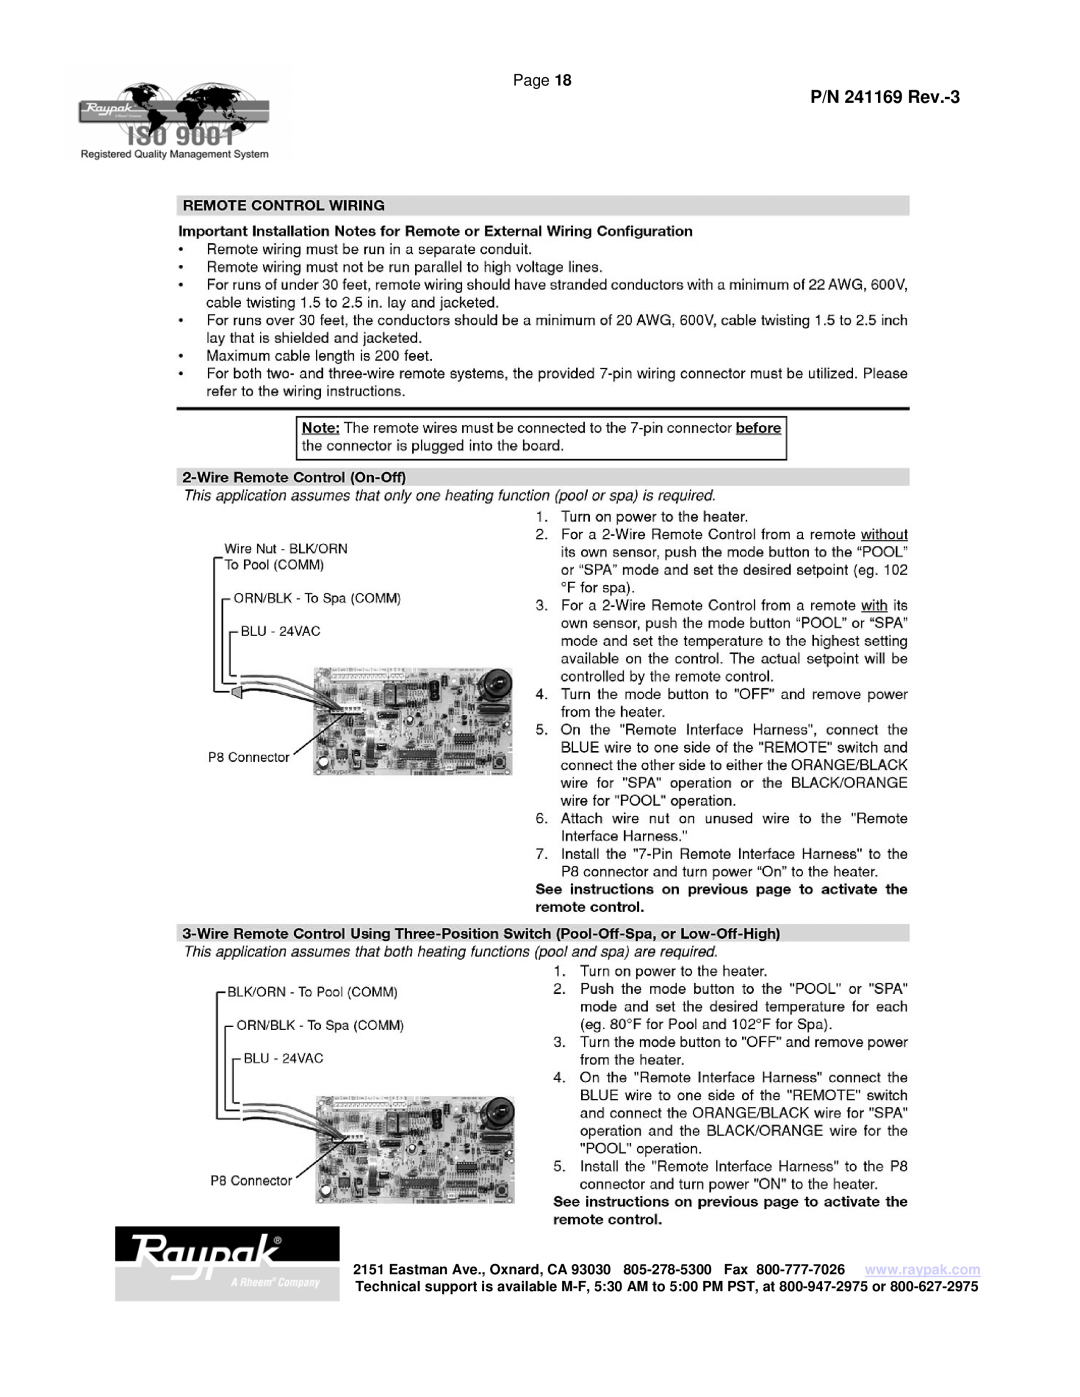 Raypak 185A manual P/N 241169 Rev.-3, Page 